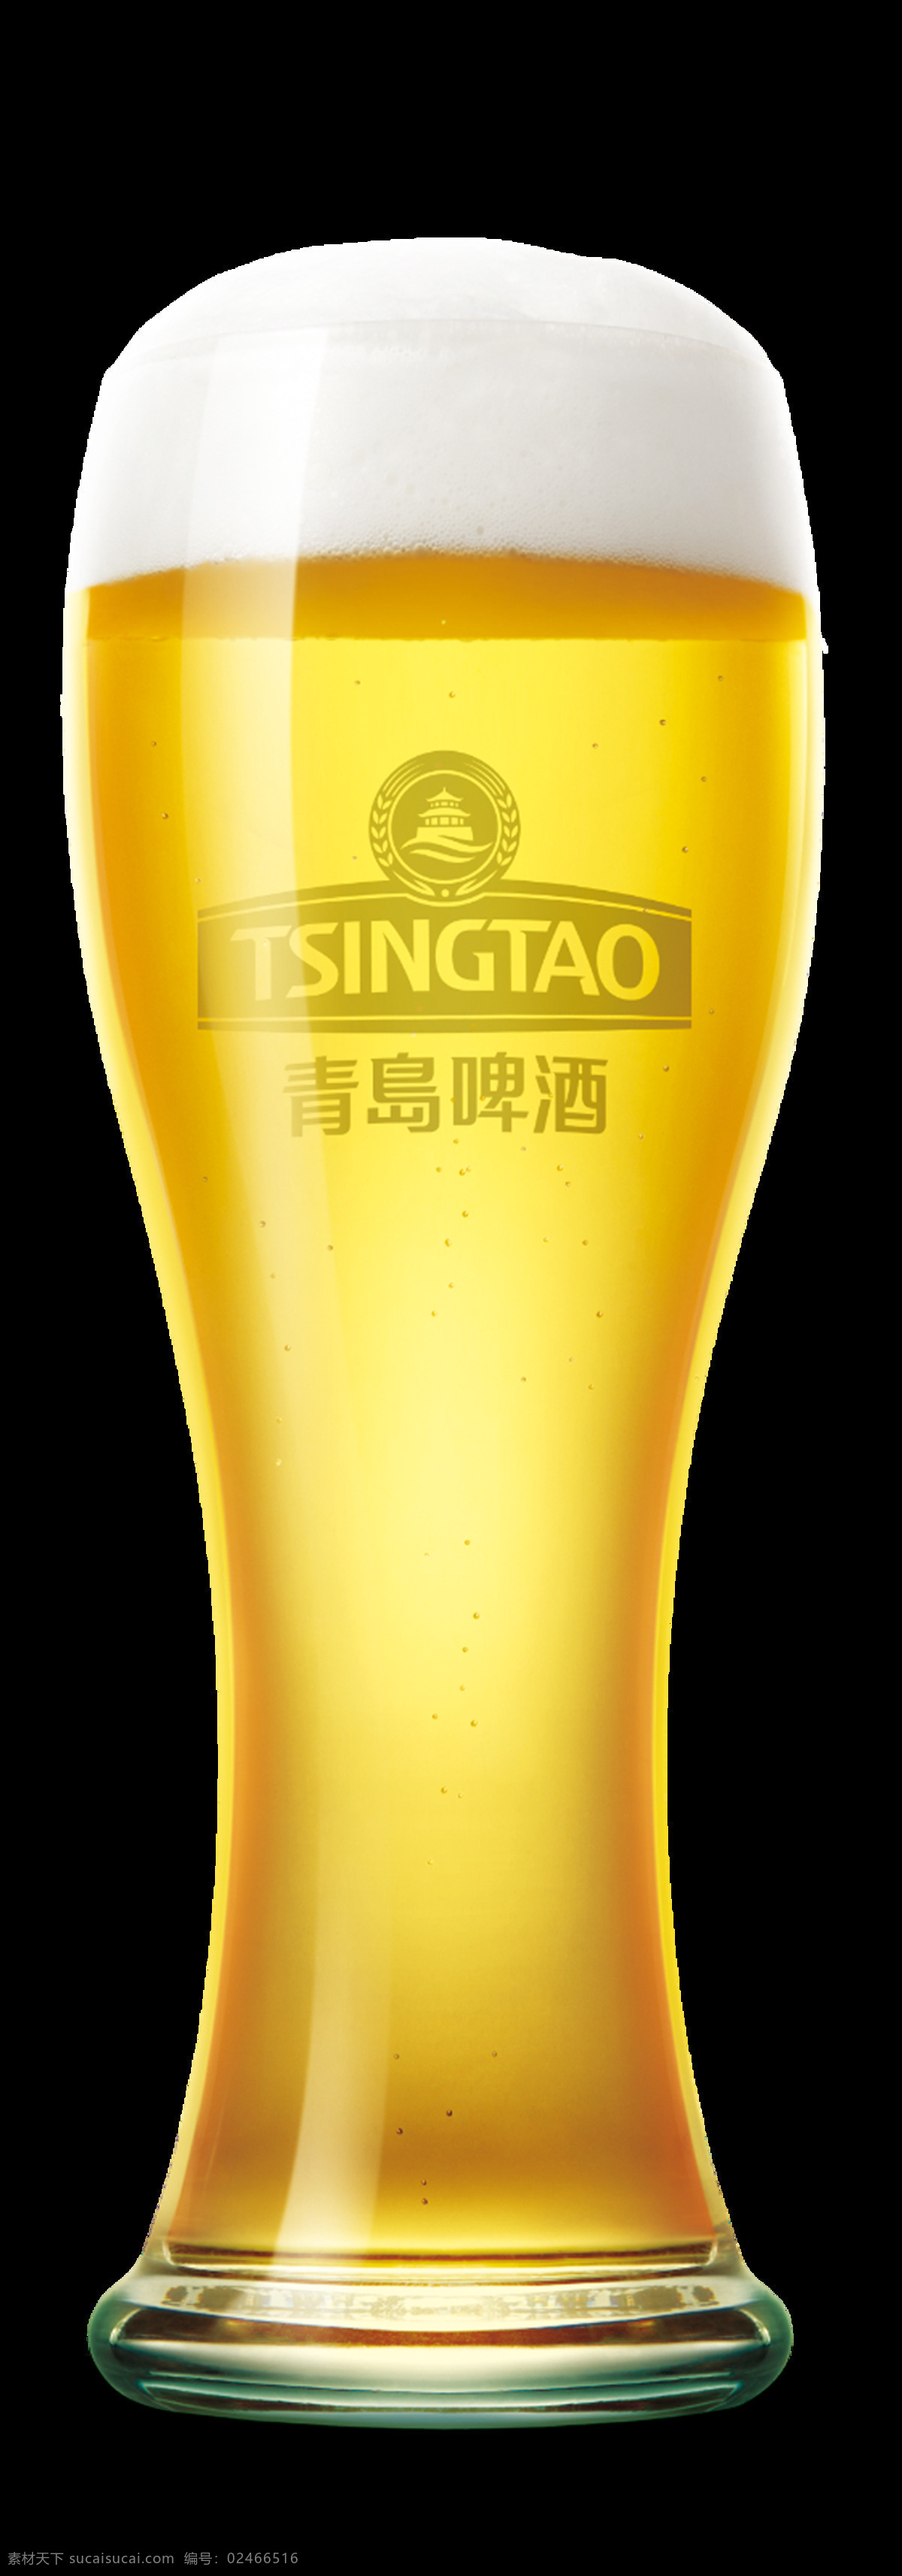 青岛啤酒杯子 青岛啤酒杯 啤酒杯 玻璃杯 杯子 啤酒 素材集锦